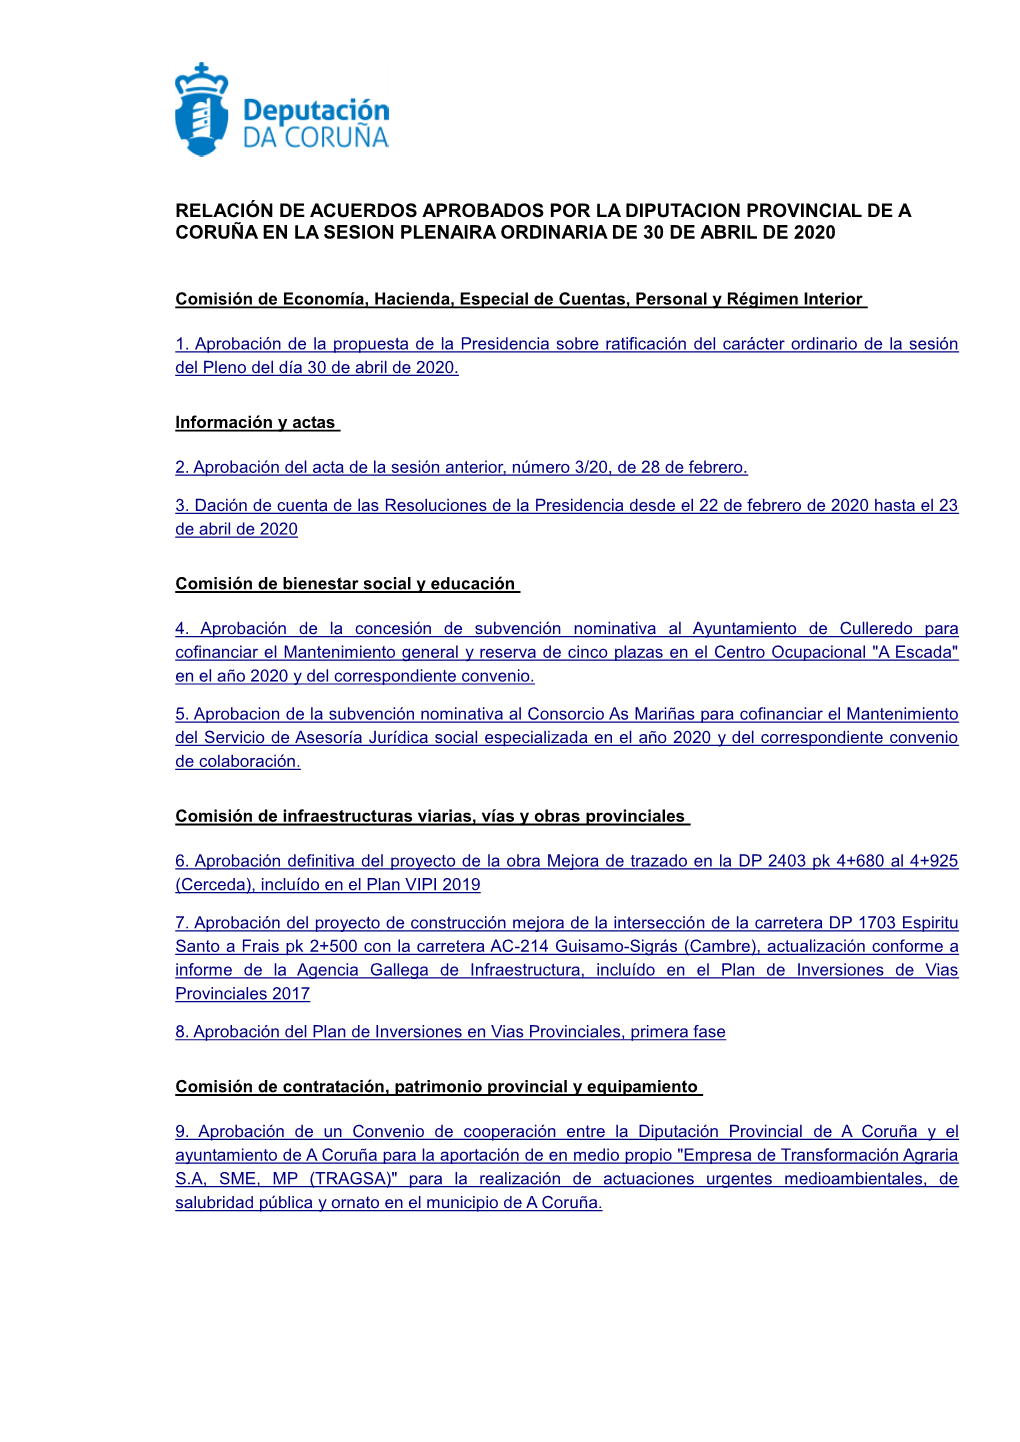 Relación De Acuerdos Aprobados Por La Diputacion Provincial De a Coruña En La Sesion Plenaira Ordinaria De 30 De Abril De 2020